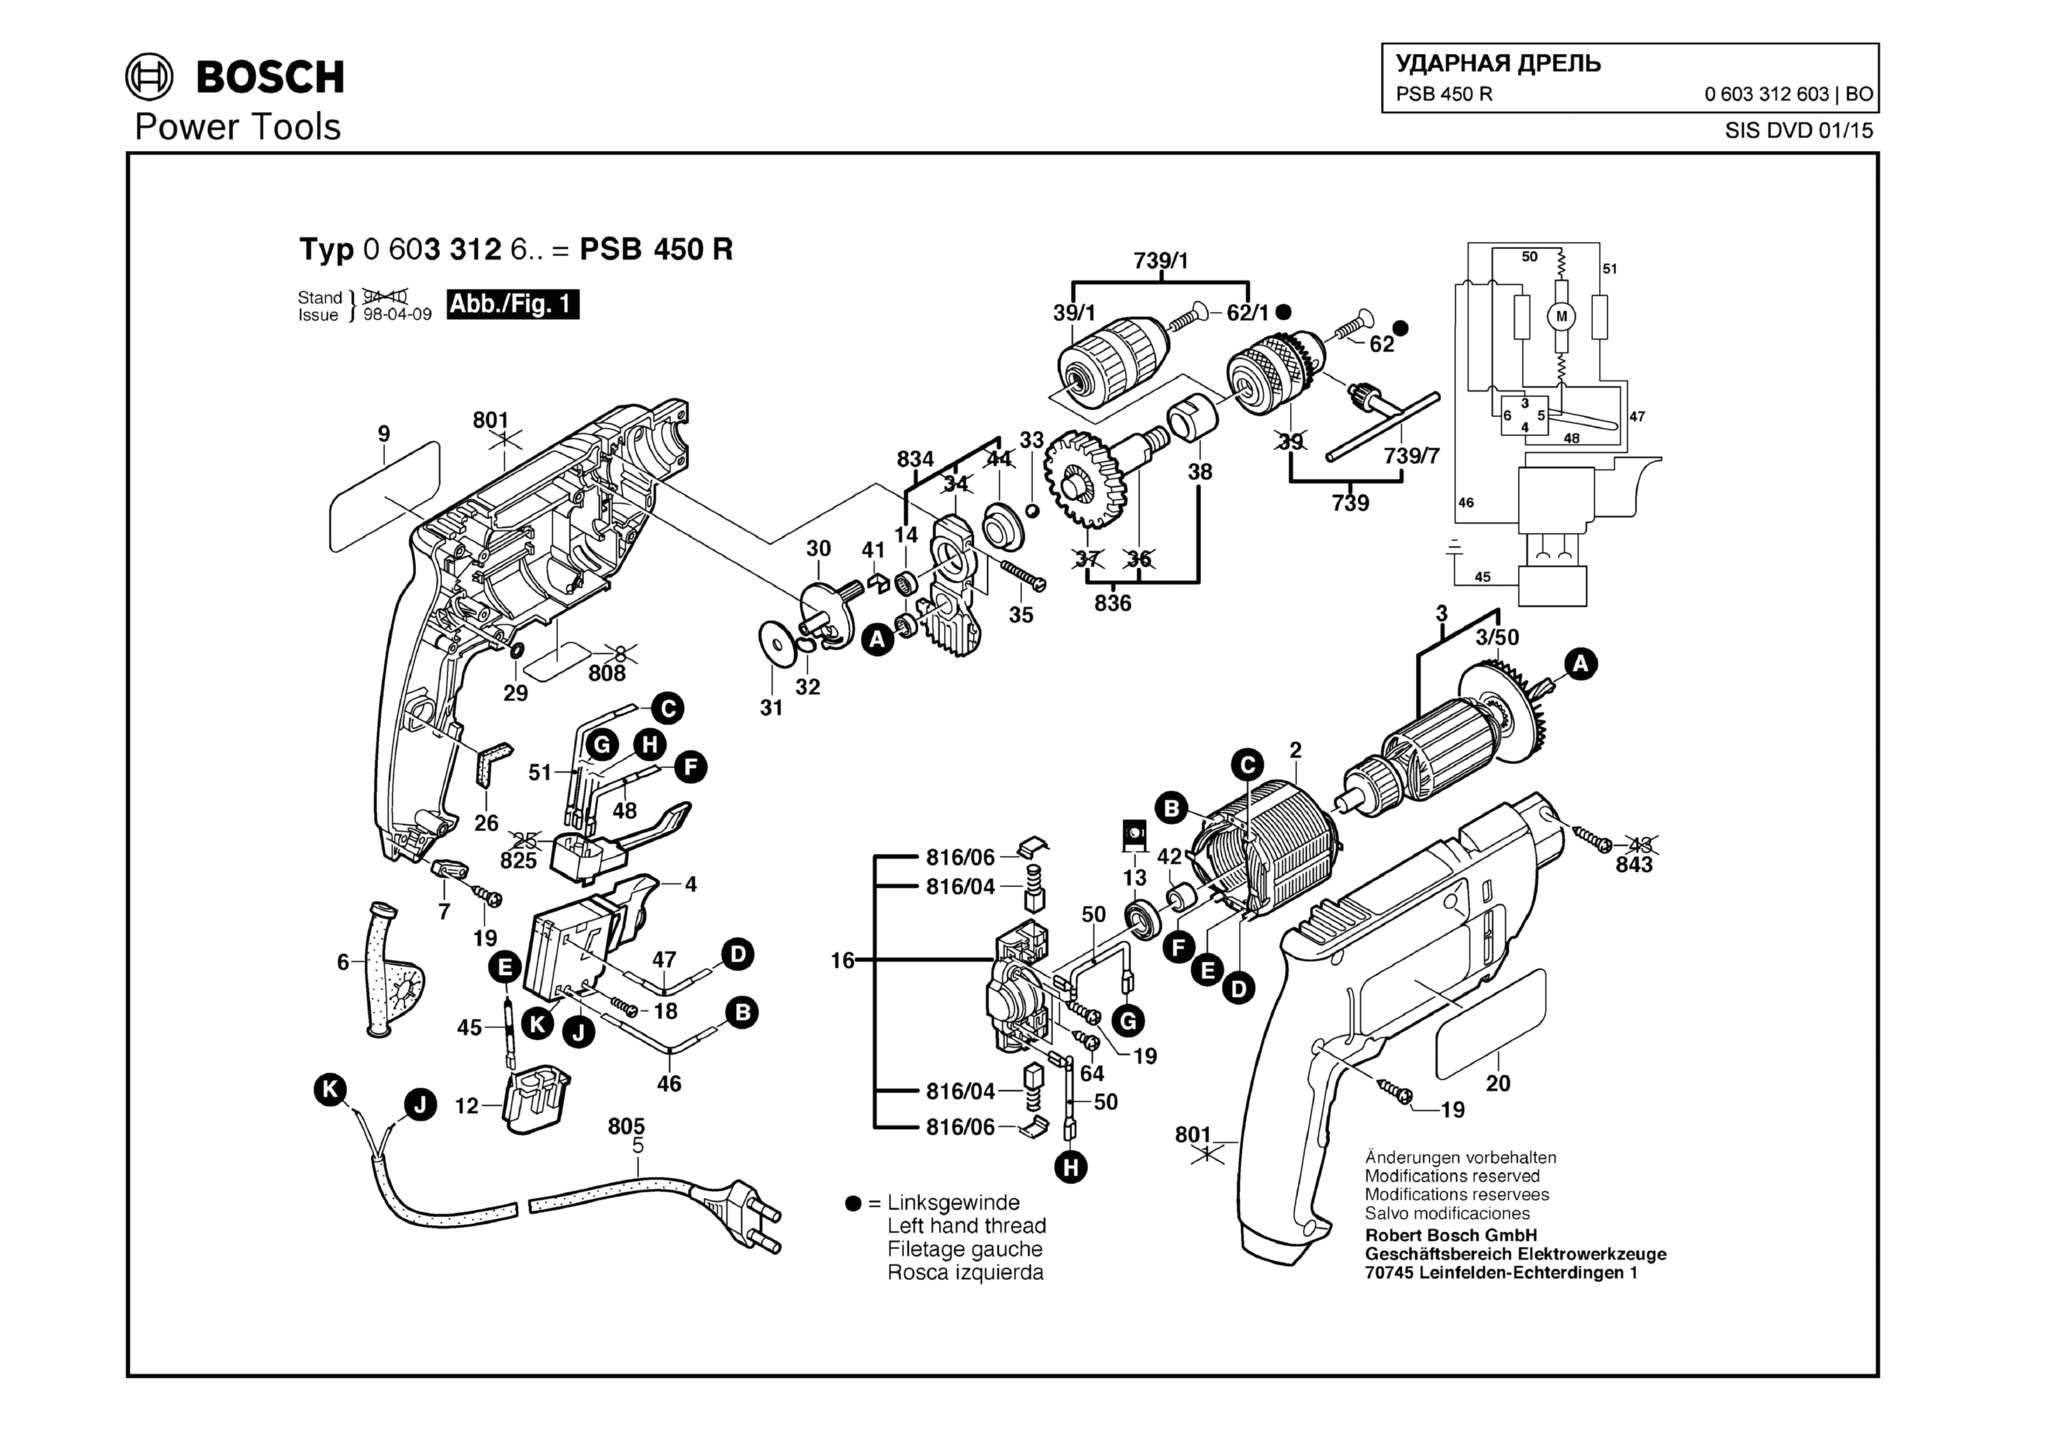 Запчасти, схема и деталировка Bosch PSB 450 R (ТИП 0603312603)